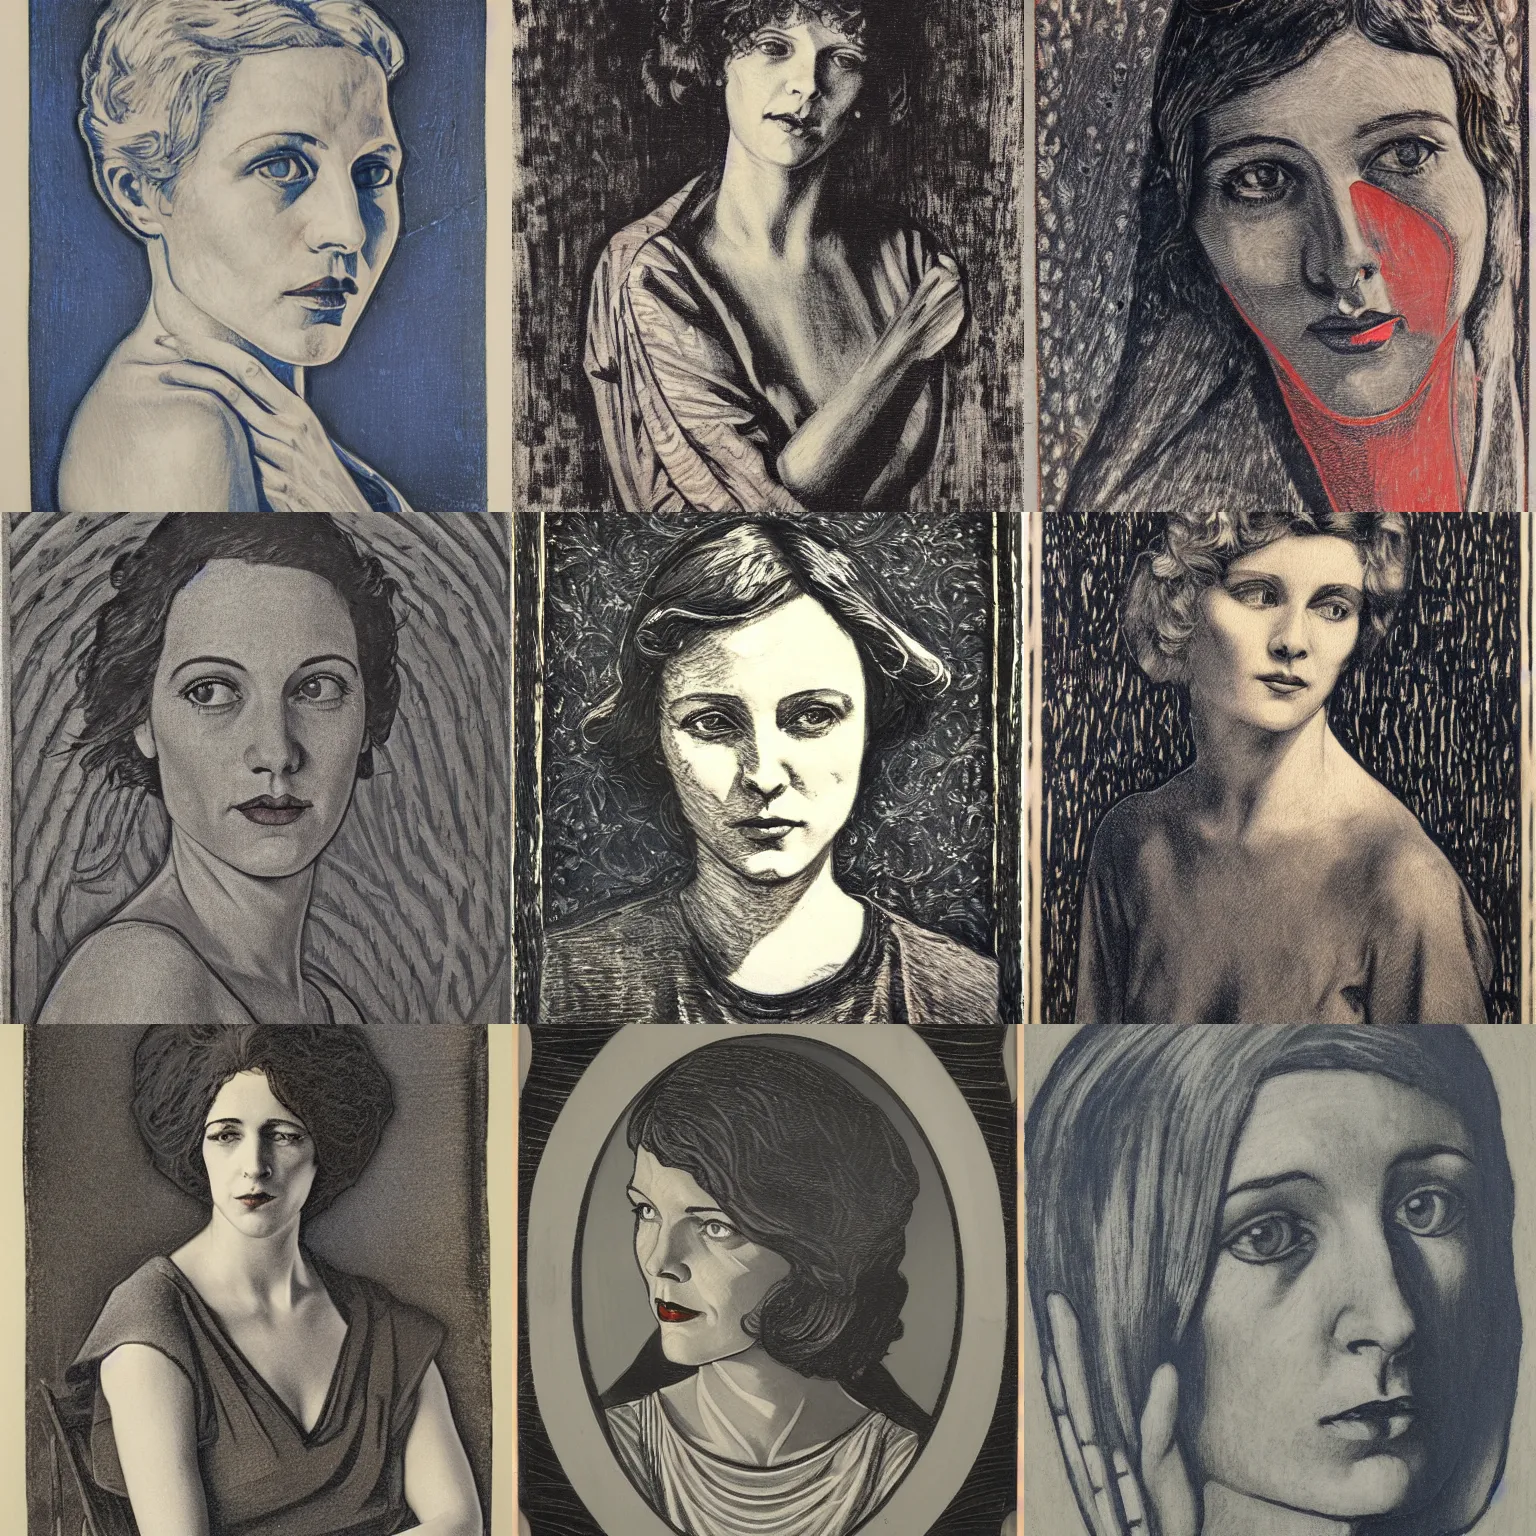 Prompt: portrait, american realist, woodcut, art nouveau ( 1 9 2 2 ), pyrrol scarlet, titanium white, prussian blue, stathmore 2 0 0, 3 5 mm, f 1. 4, grisaille, luminous